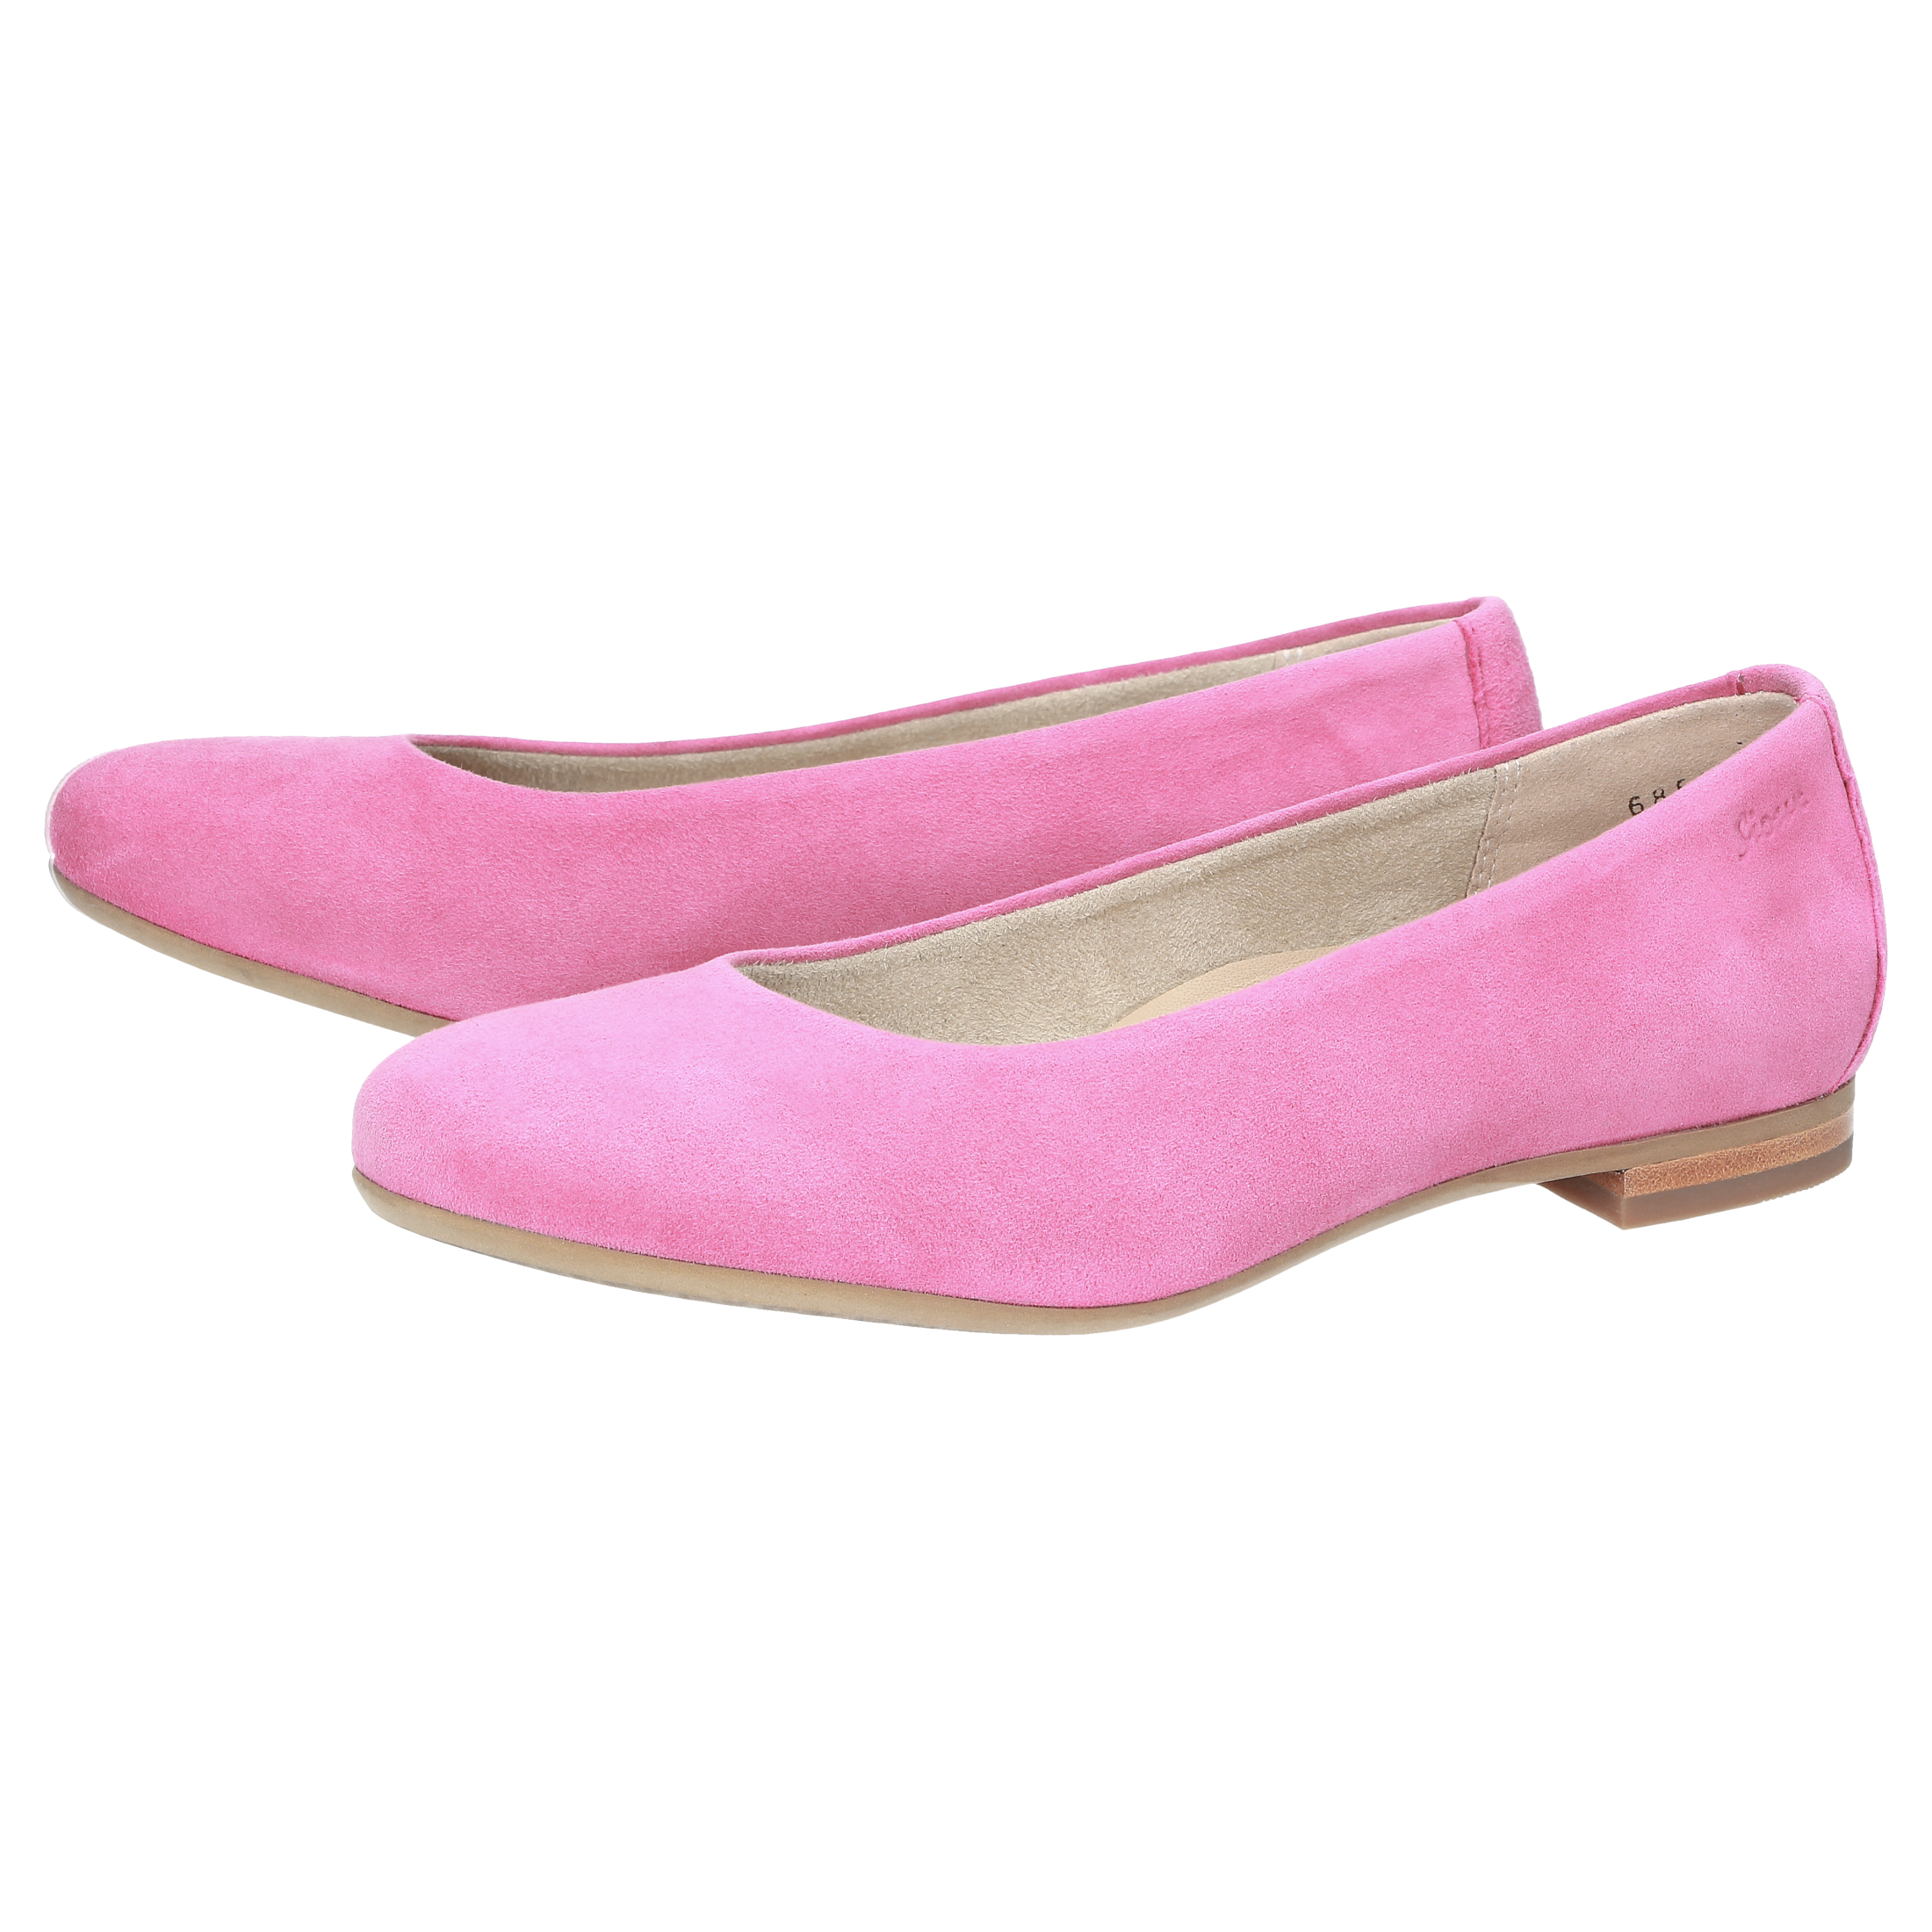 Chaussures Ballerines de confort Rose Poudré Neut pour Femme.